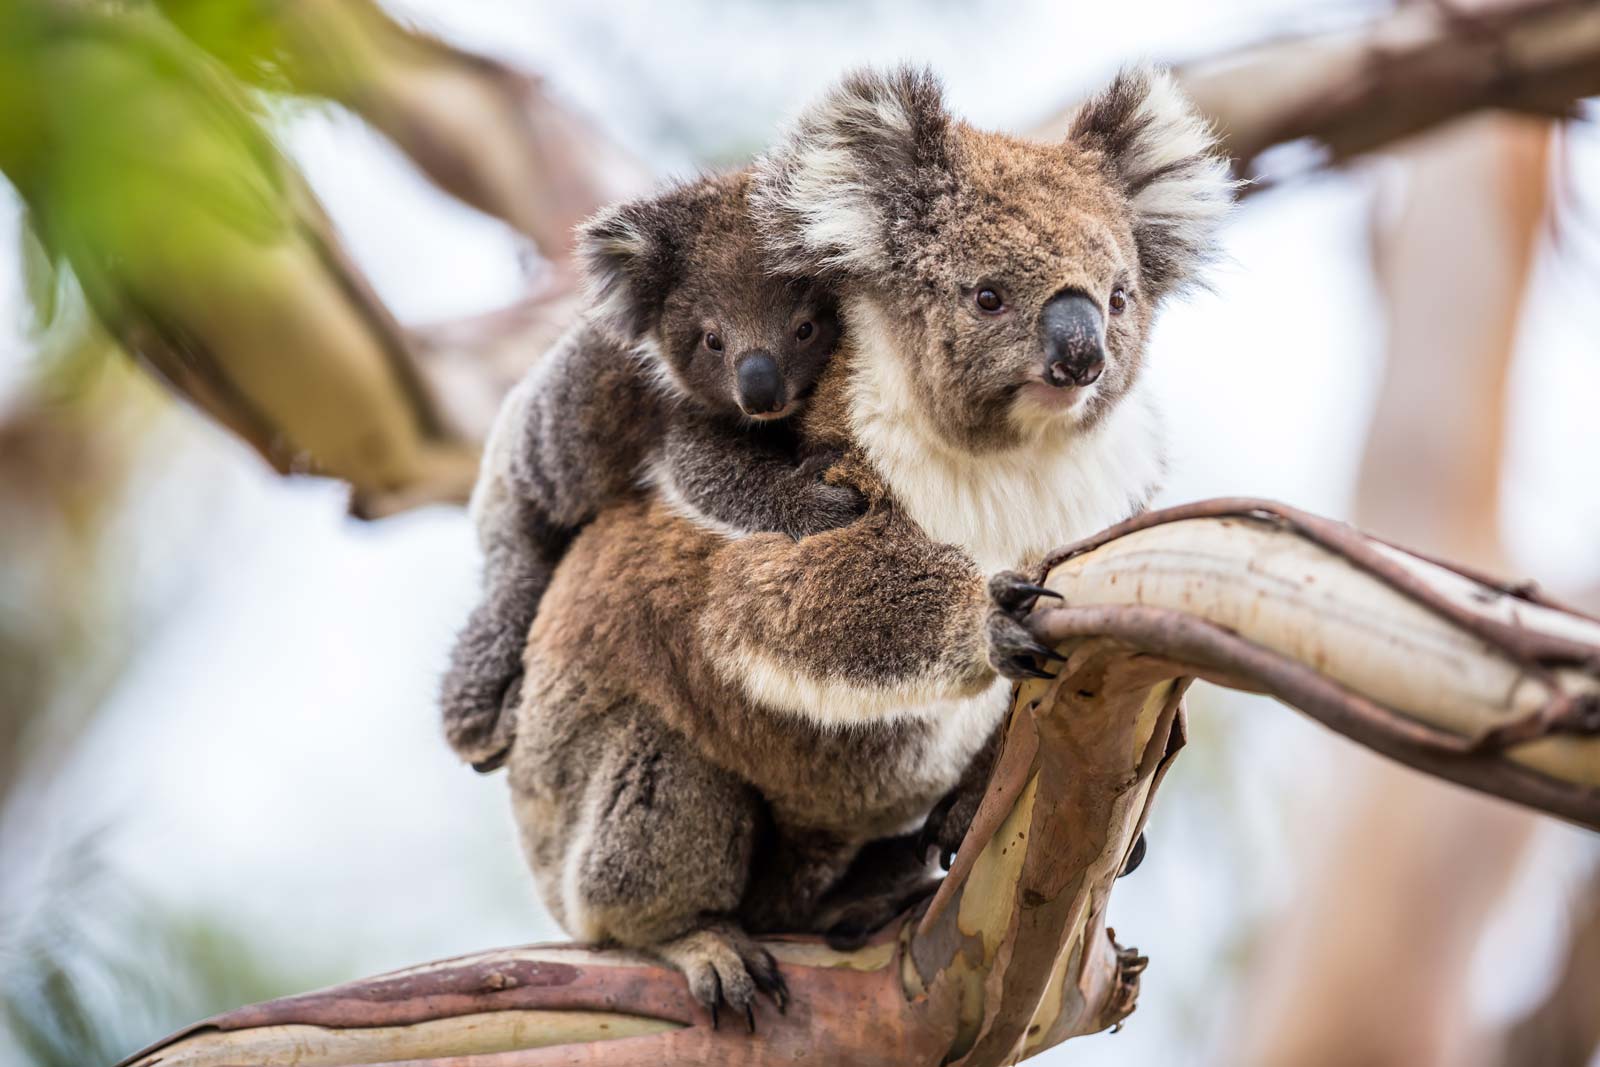 Koala bear images